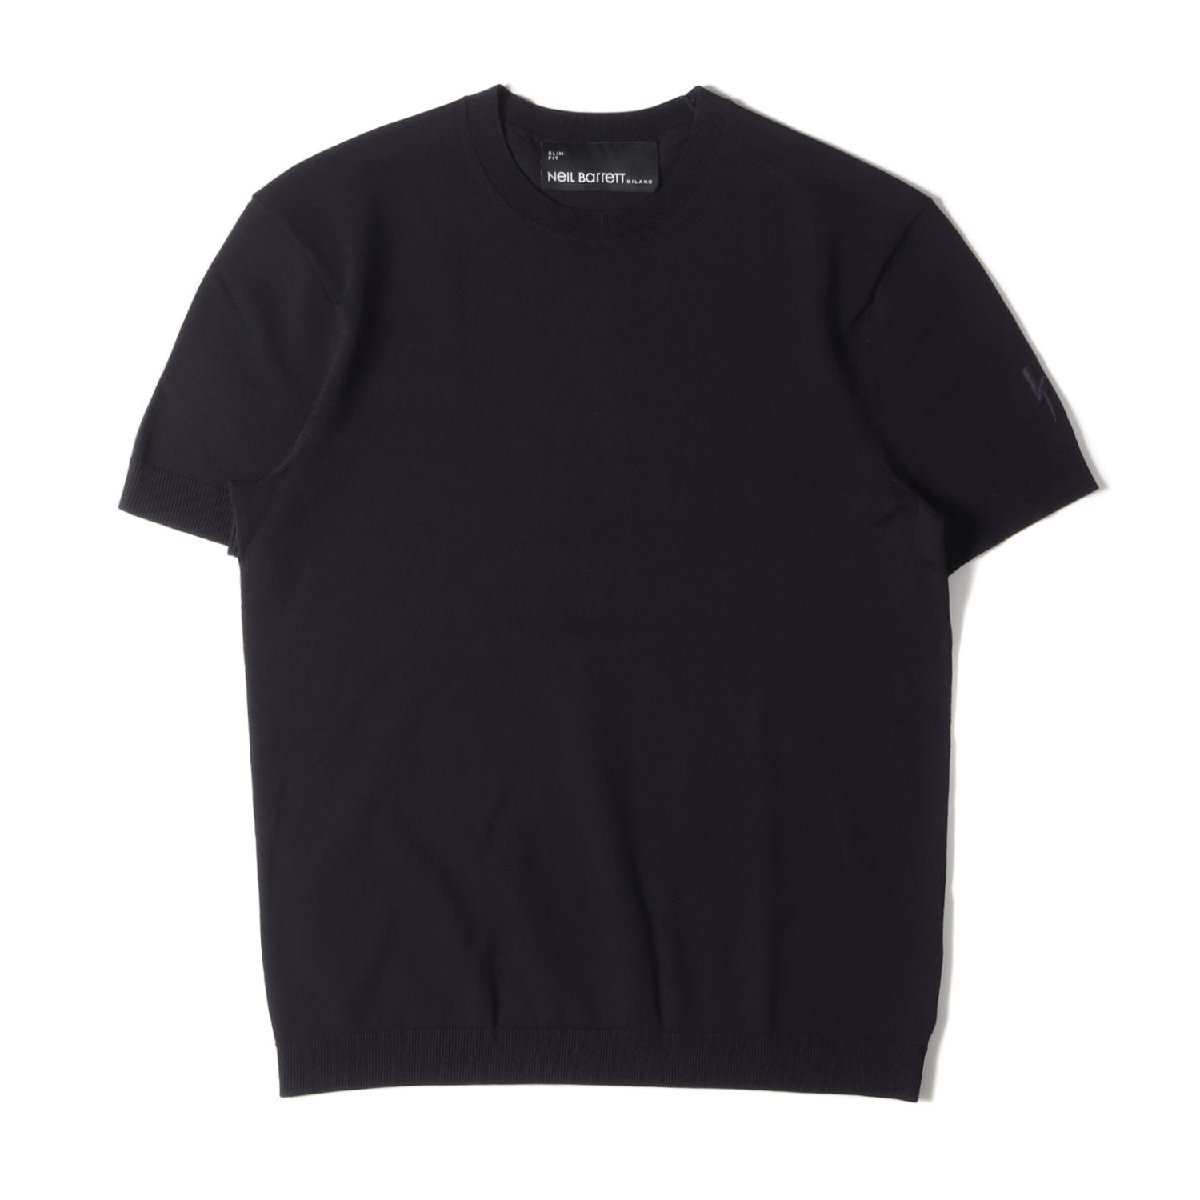 【在庫有】 ニールバレット Barrett Neil 美品 Tシャツ FIT SLIM ニットソー BMA1063E-C600 クルーネック ニット ストレッチ 近年モデル サイズ:S 半袖Tシャツ